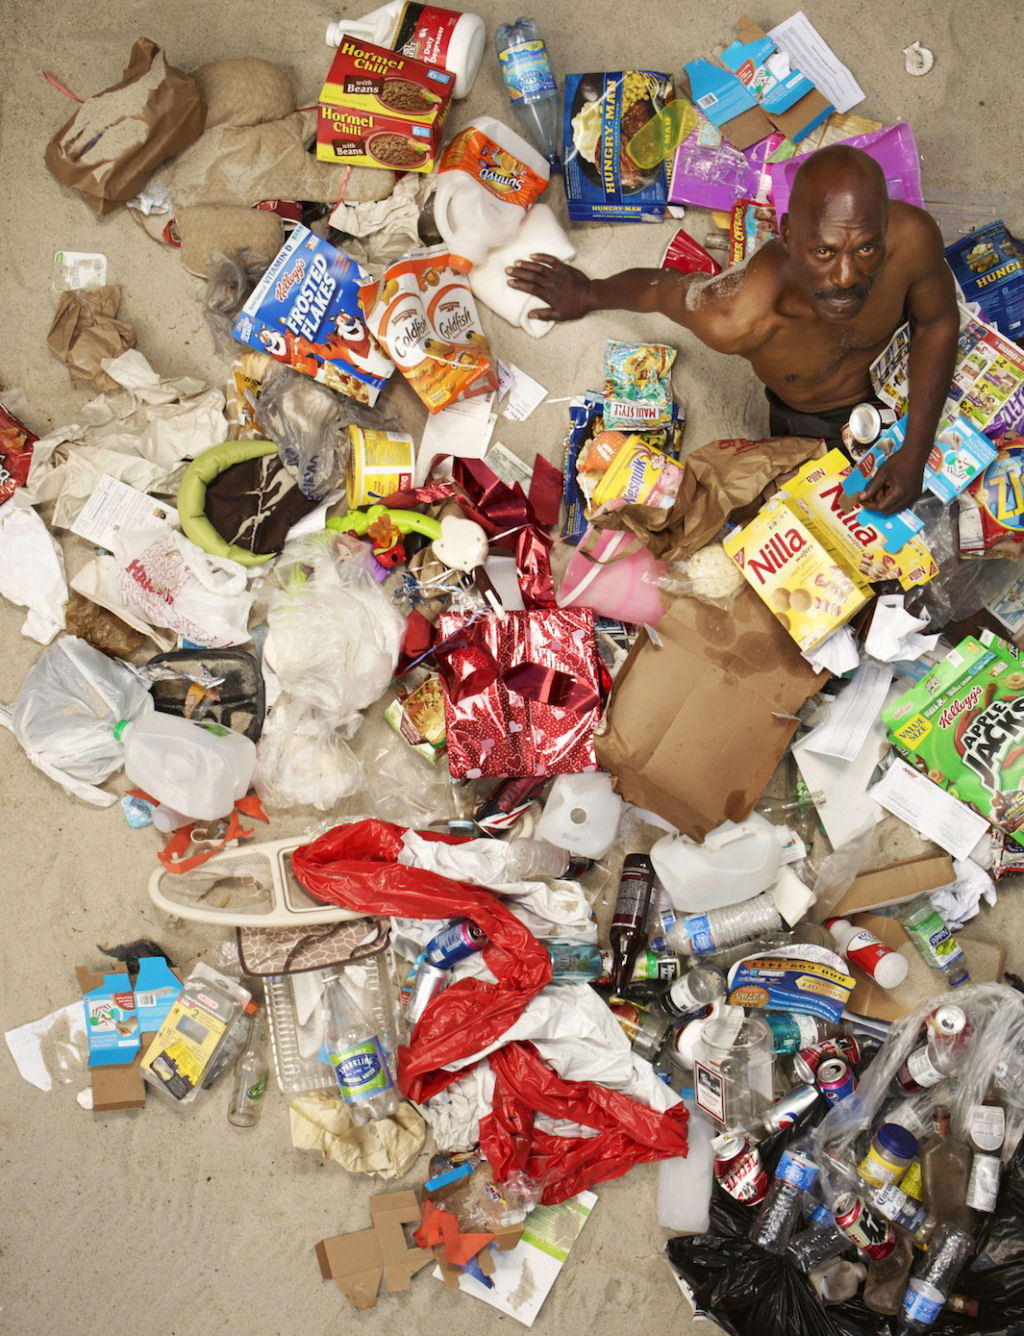 Srie mostra pessoas deitadas no seu lixo acumulado durante uma semana 09